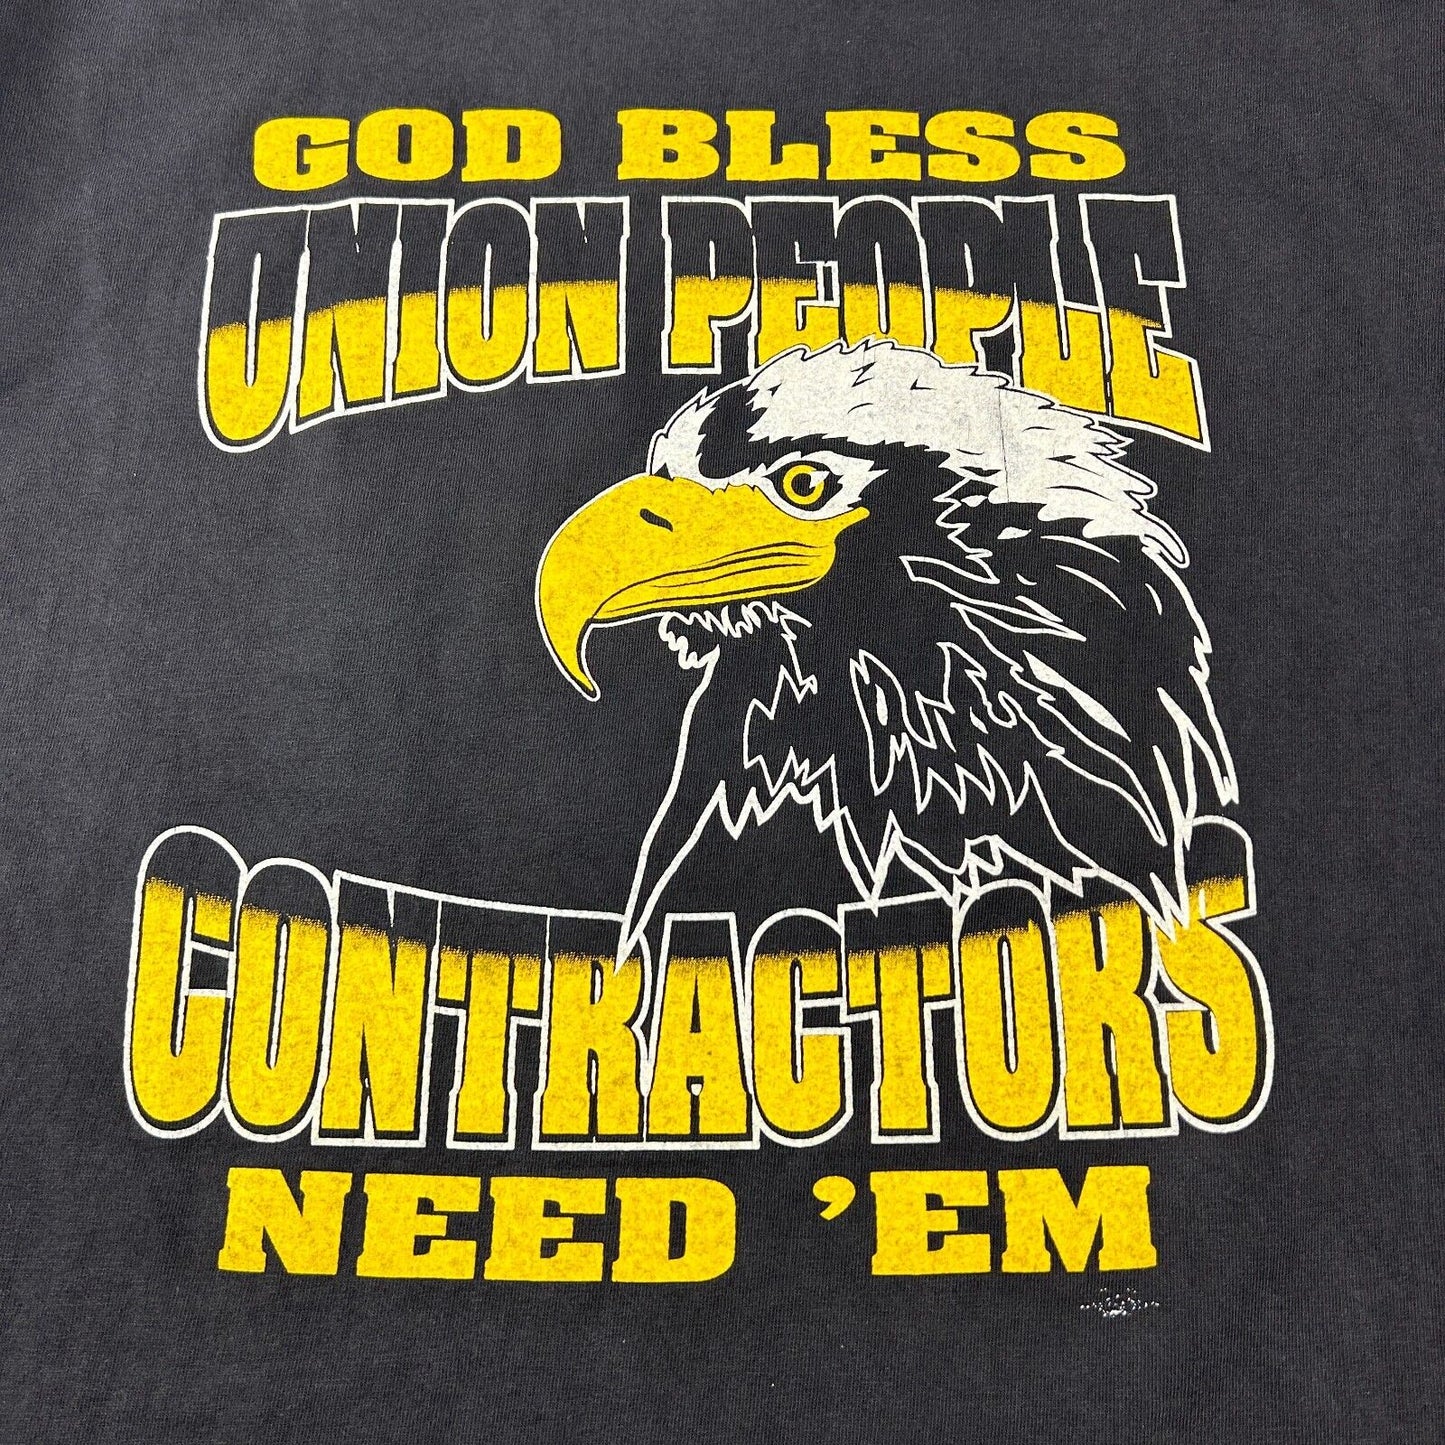 VINTAGE 90s | God Bless UNION People Contractors Need Em T-Shirt sz L Adult